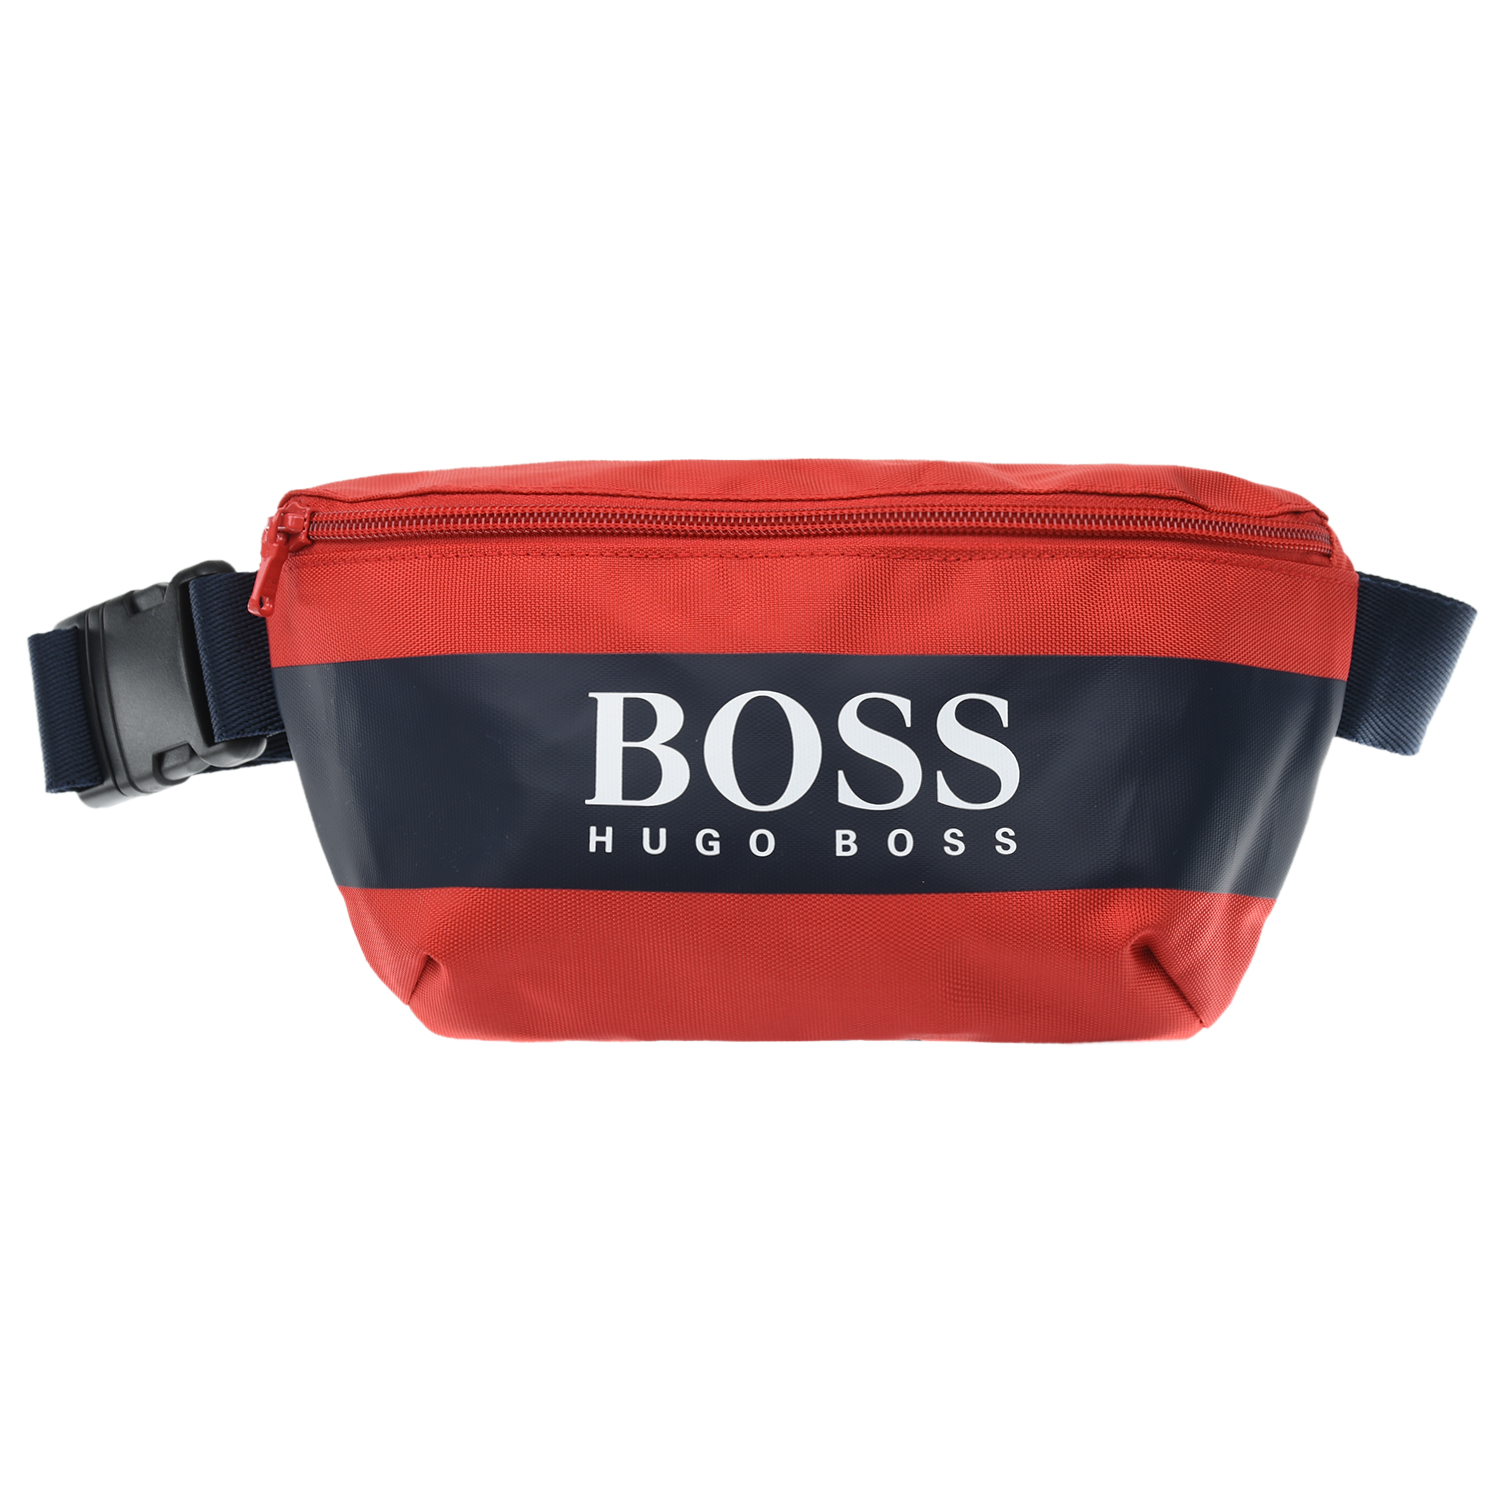 Красная сумка-пояс с логотипом, 25x13x4 см Hugo Boss детская, размер unica, цвет красный